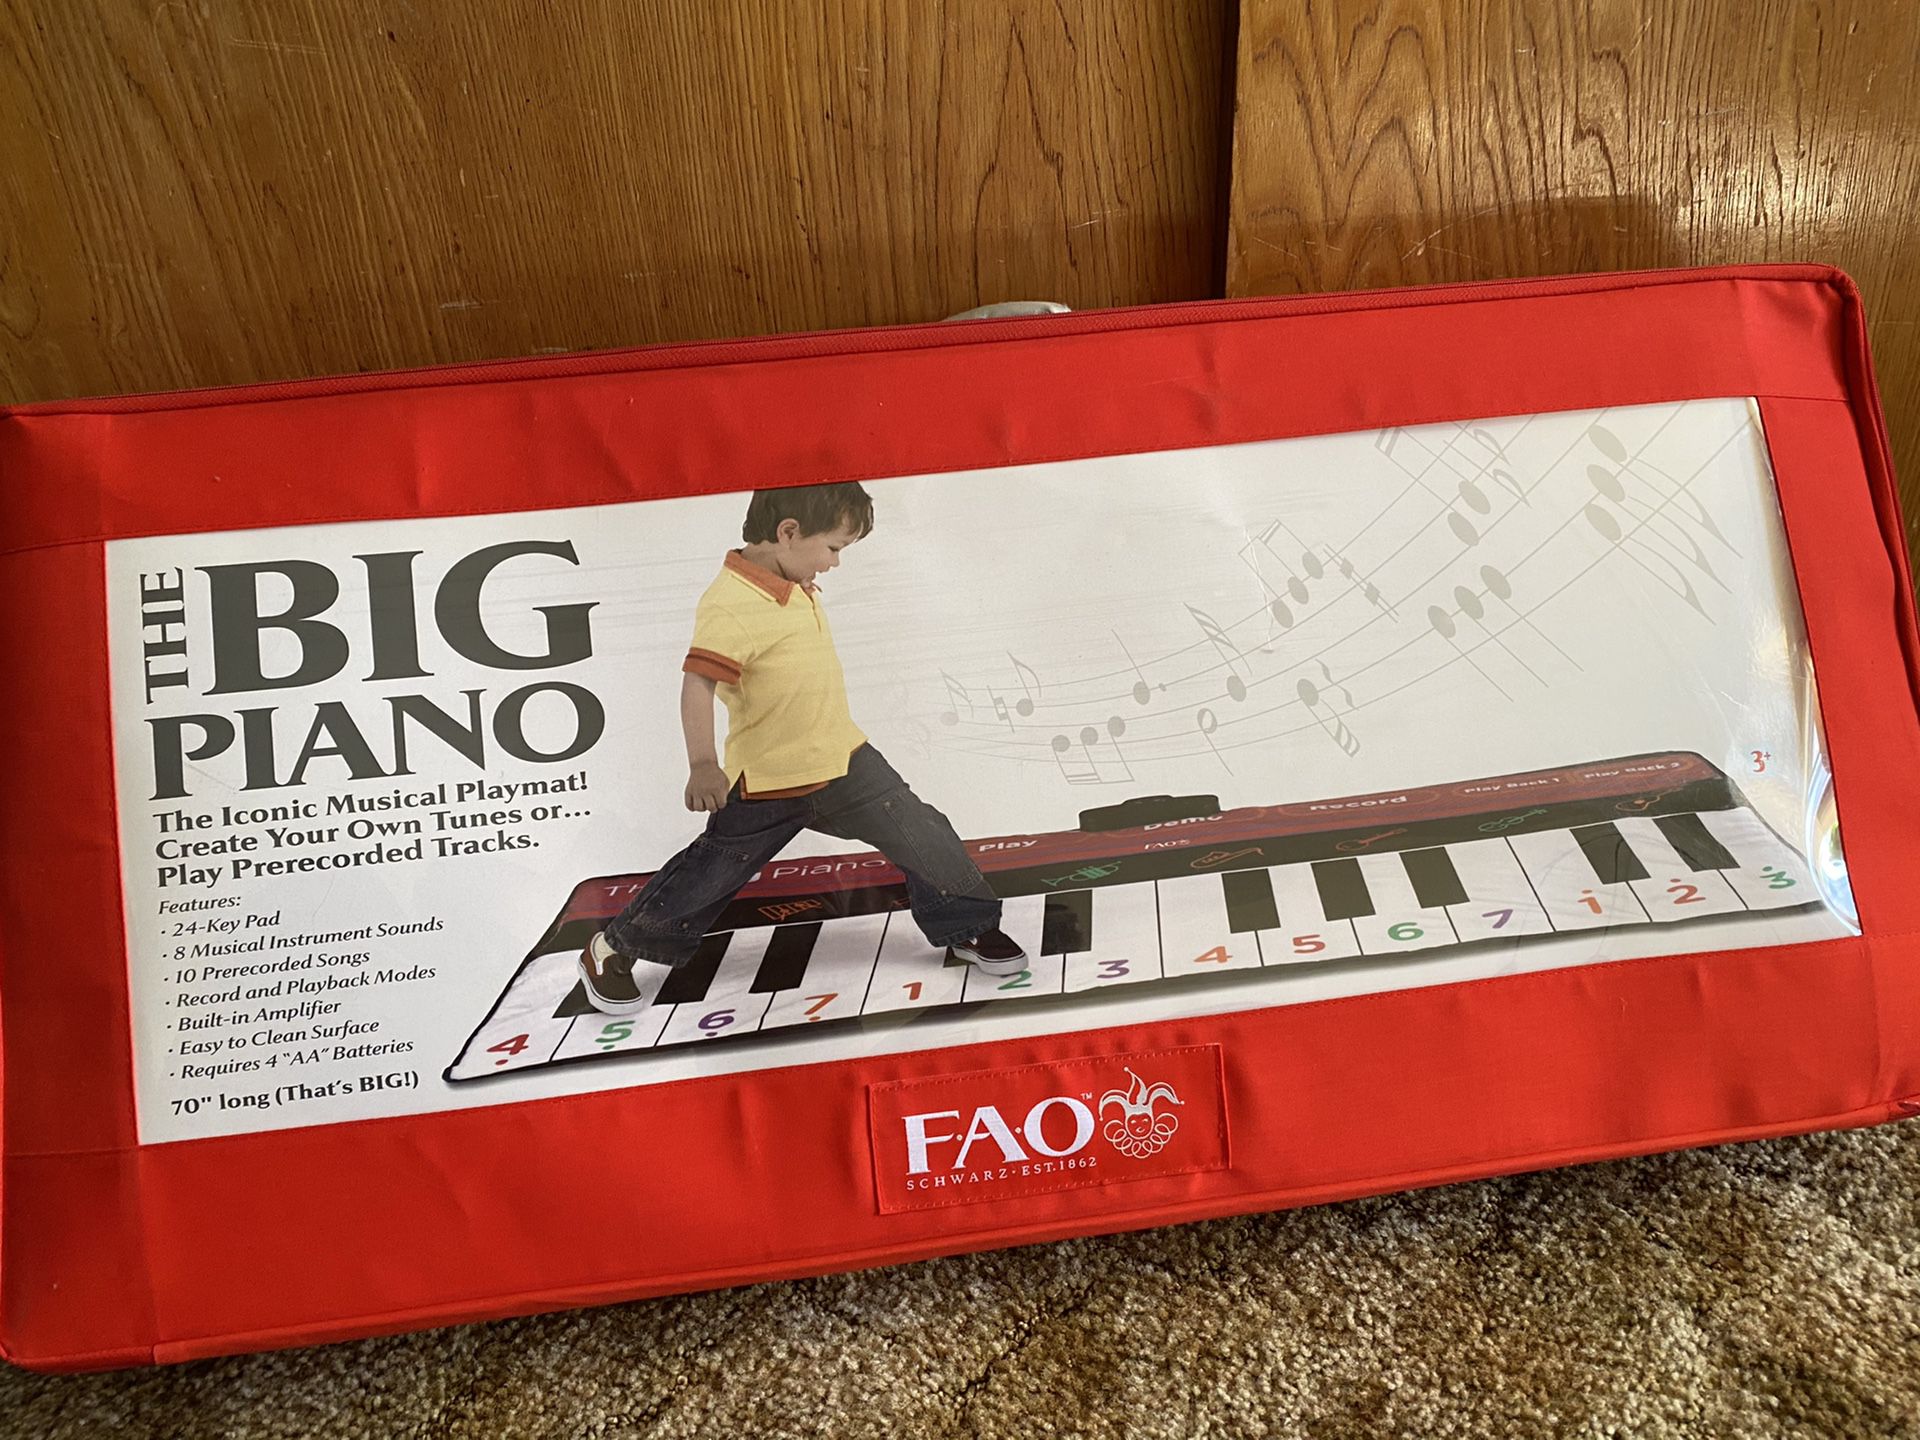 The Big Piano